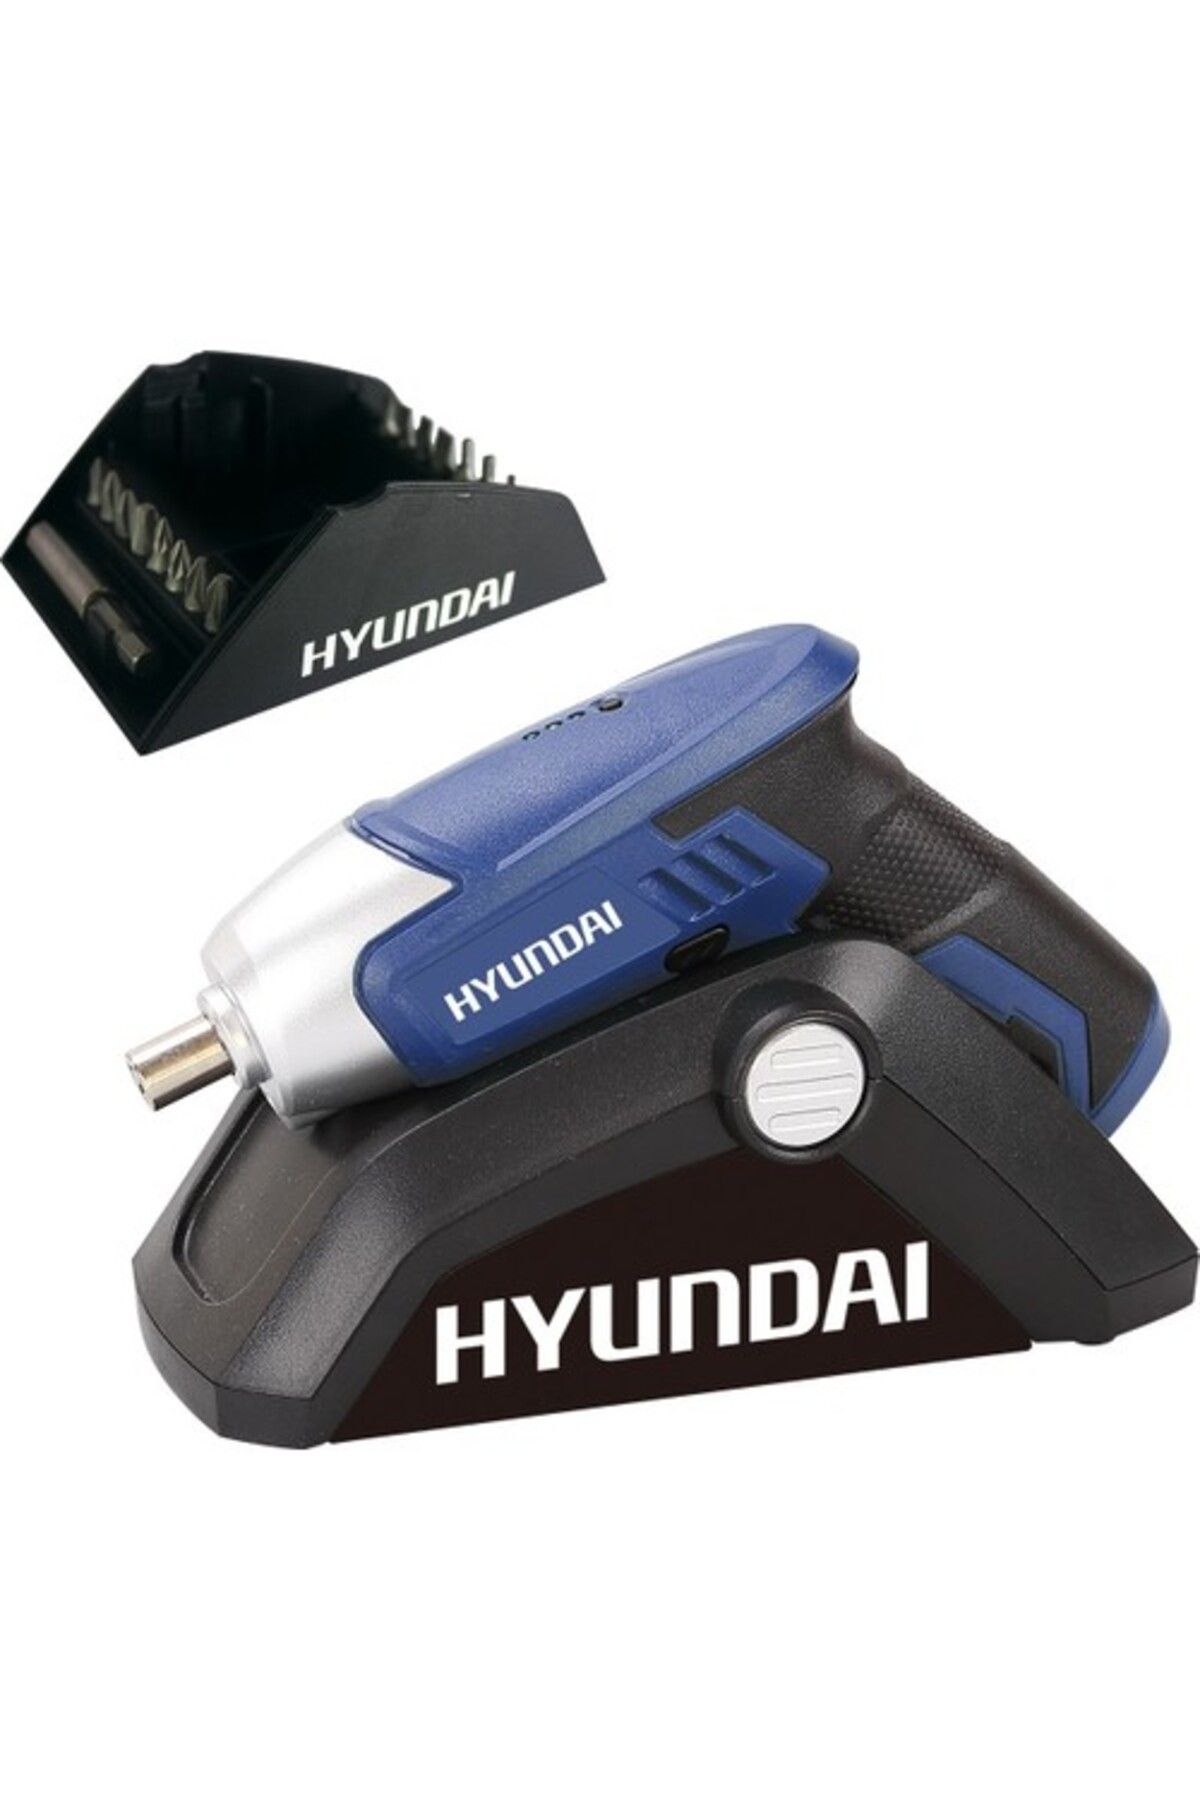 Hyundai Hpa0415 1,3 Ah Li-ion Akülü Vidalama